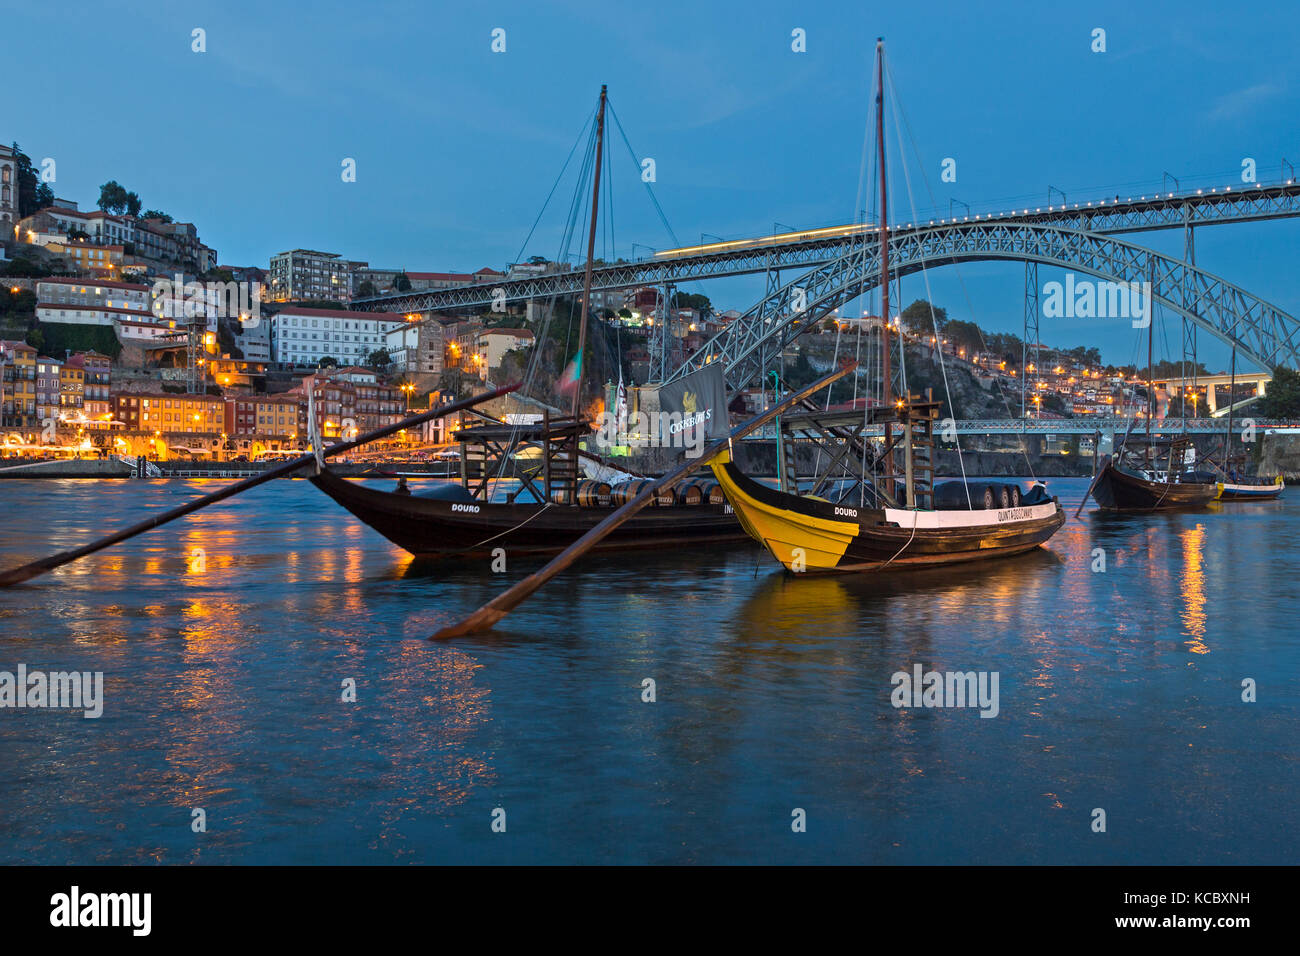 Rabelo boats, Port wine boats on the river Rio Douro, twilight, Porto, Portugal Stock Photo